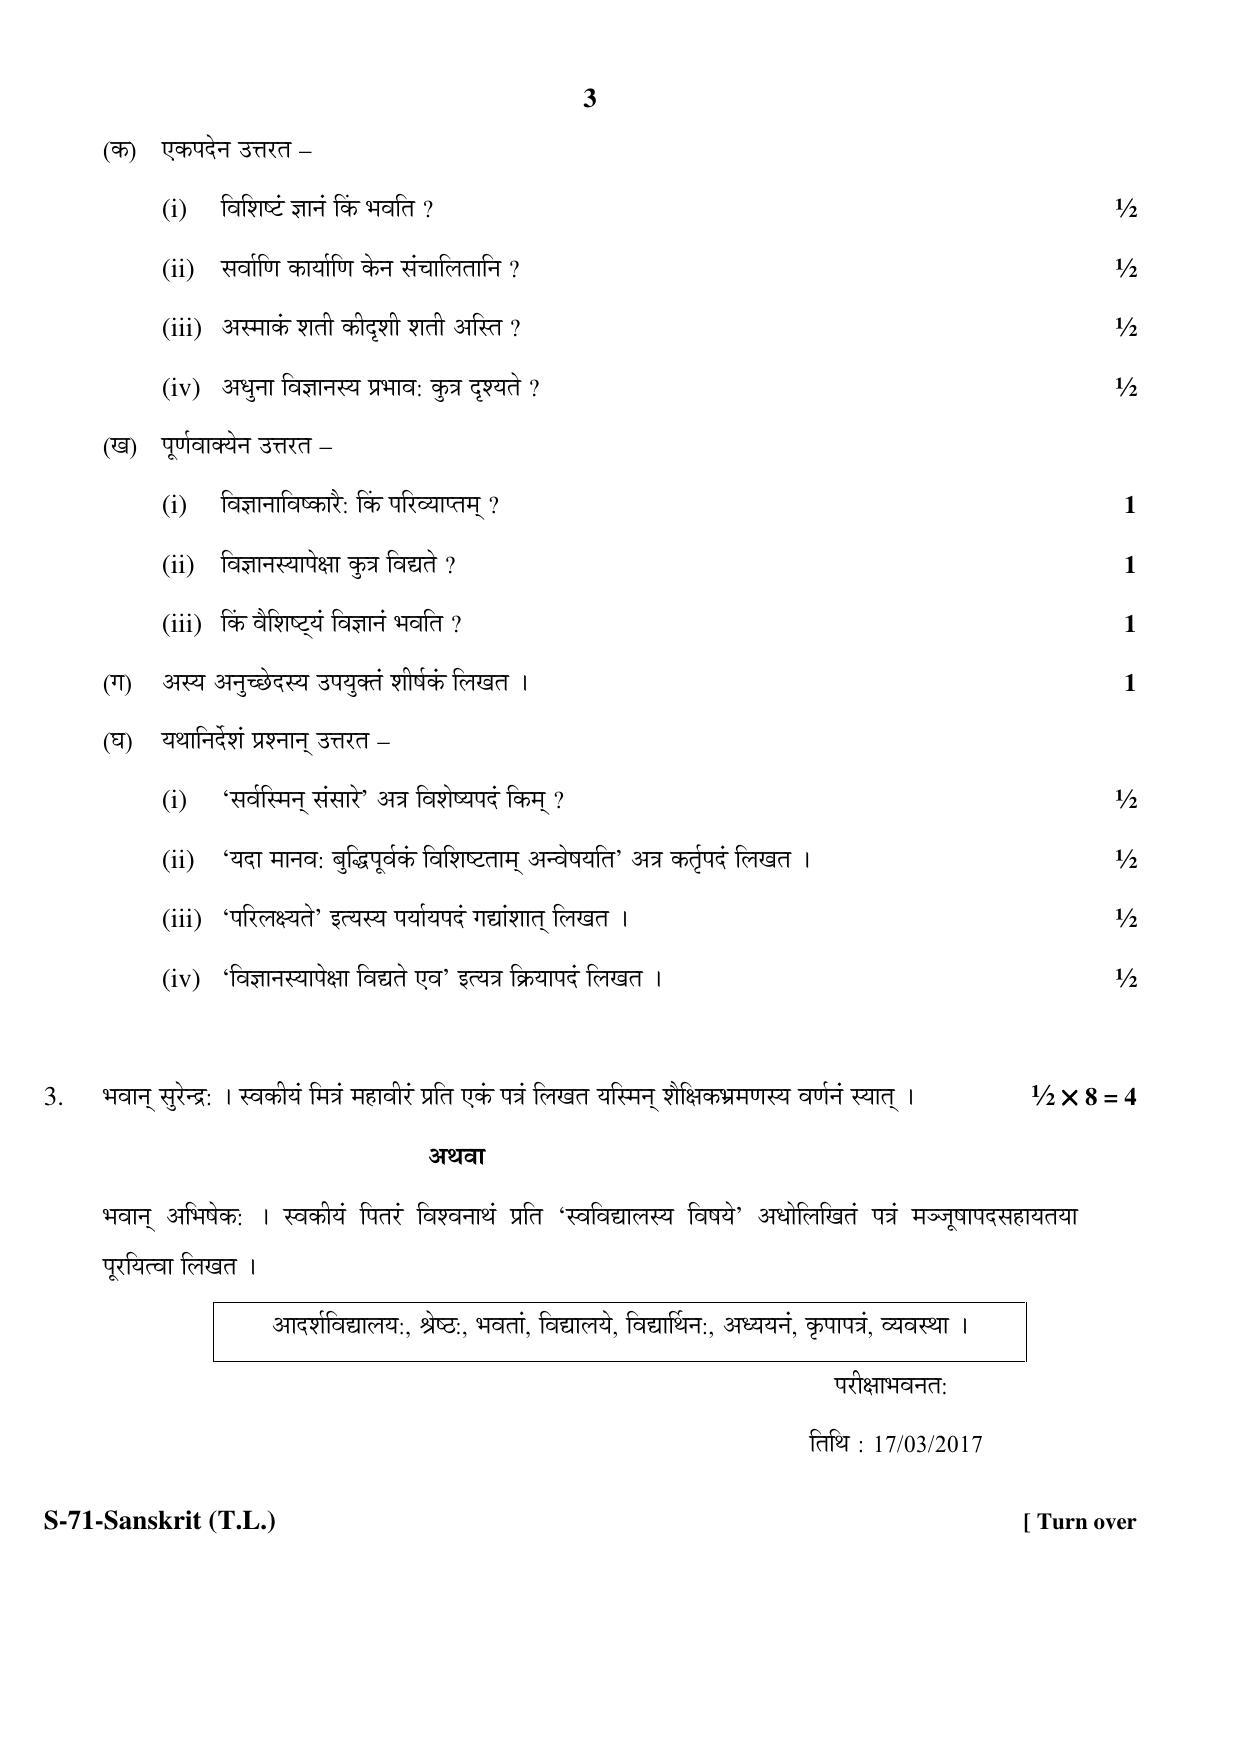 RBSE Class 10 Sanskrit (T.L.) 2017 Question Paper - Page 3